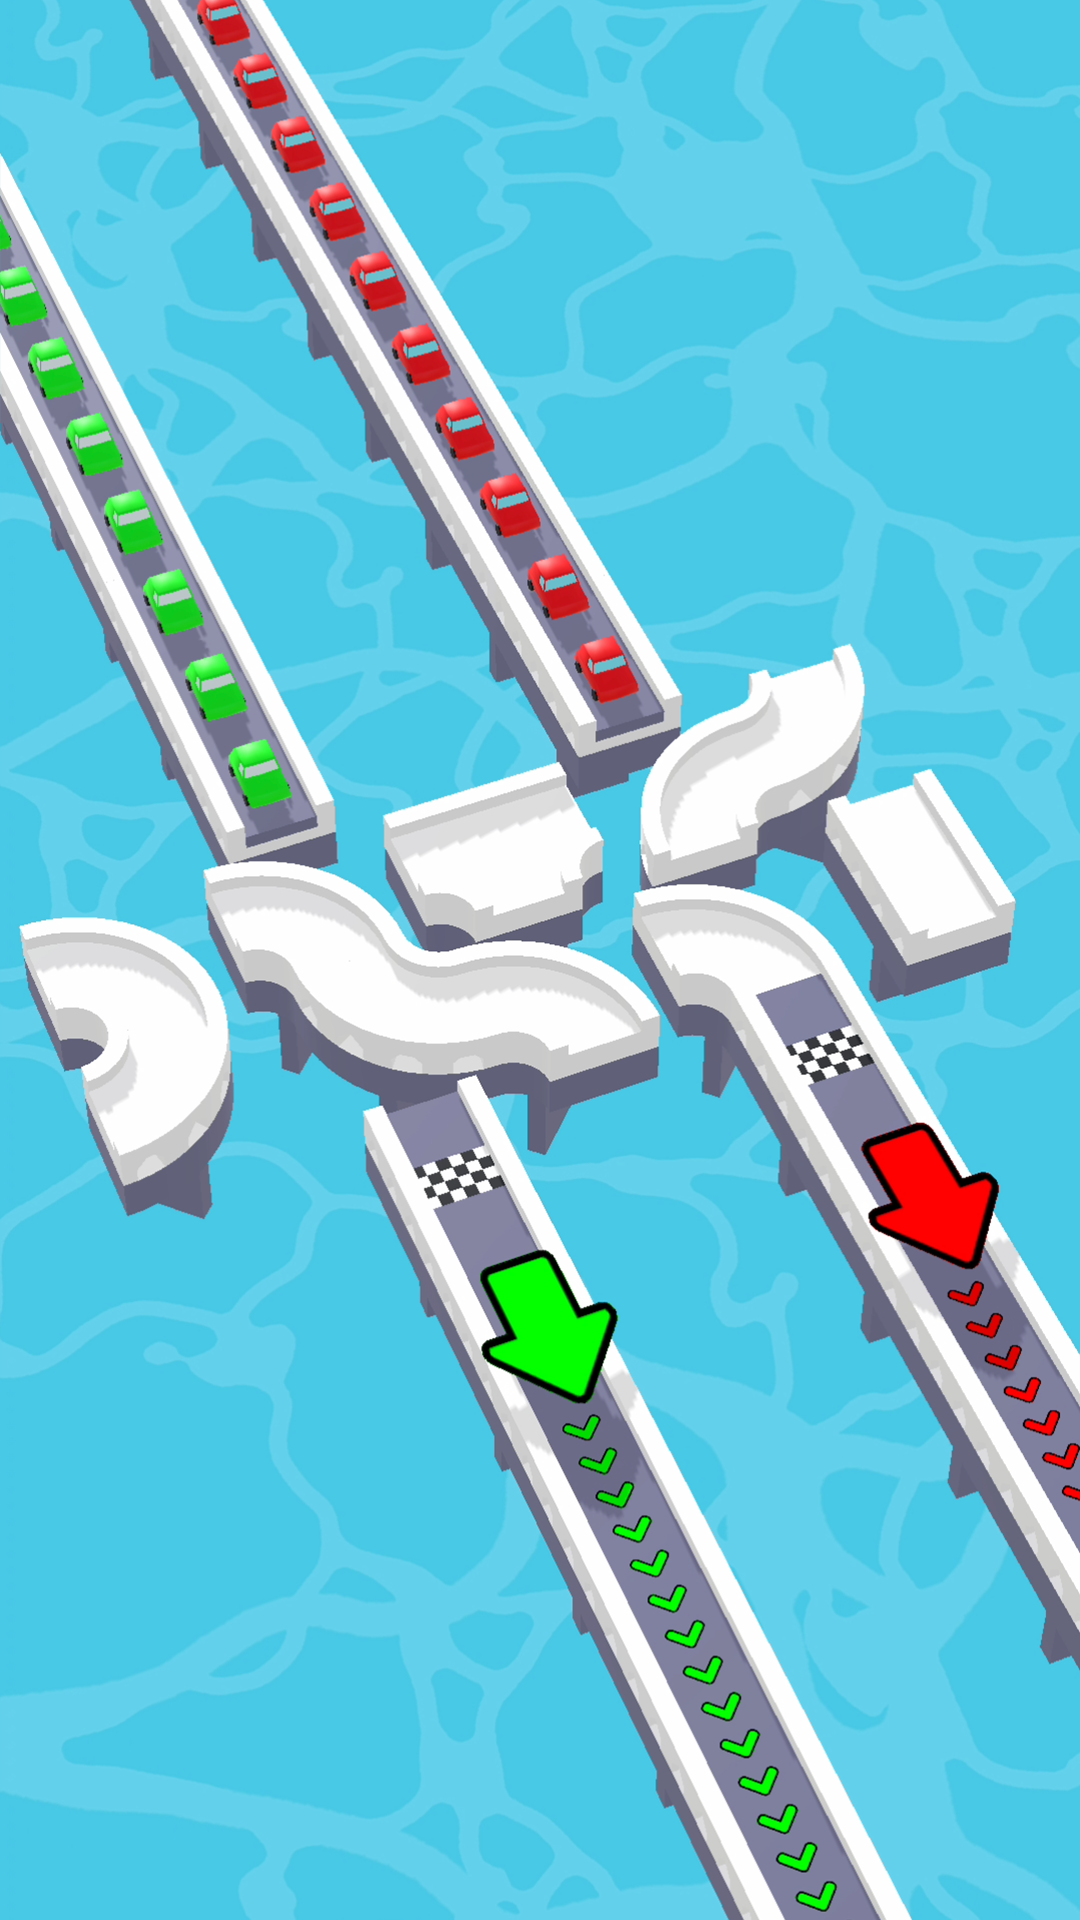 Screenshot 1 of Crossing Bridge 1.0.0